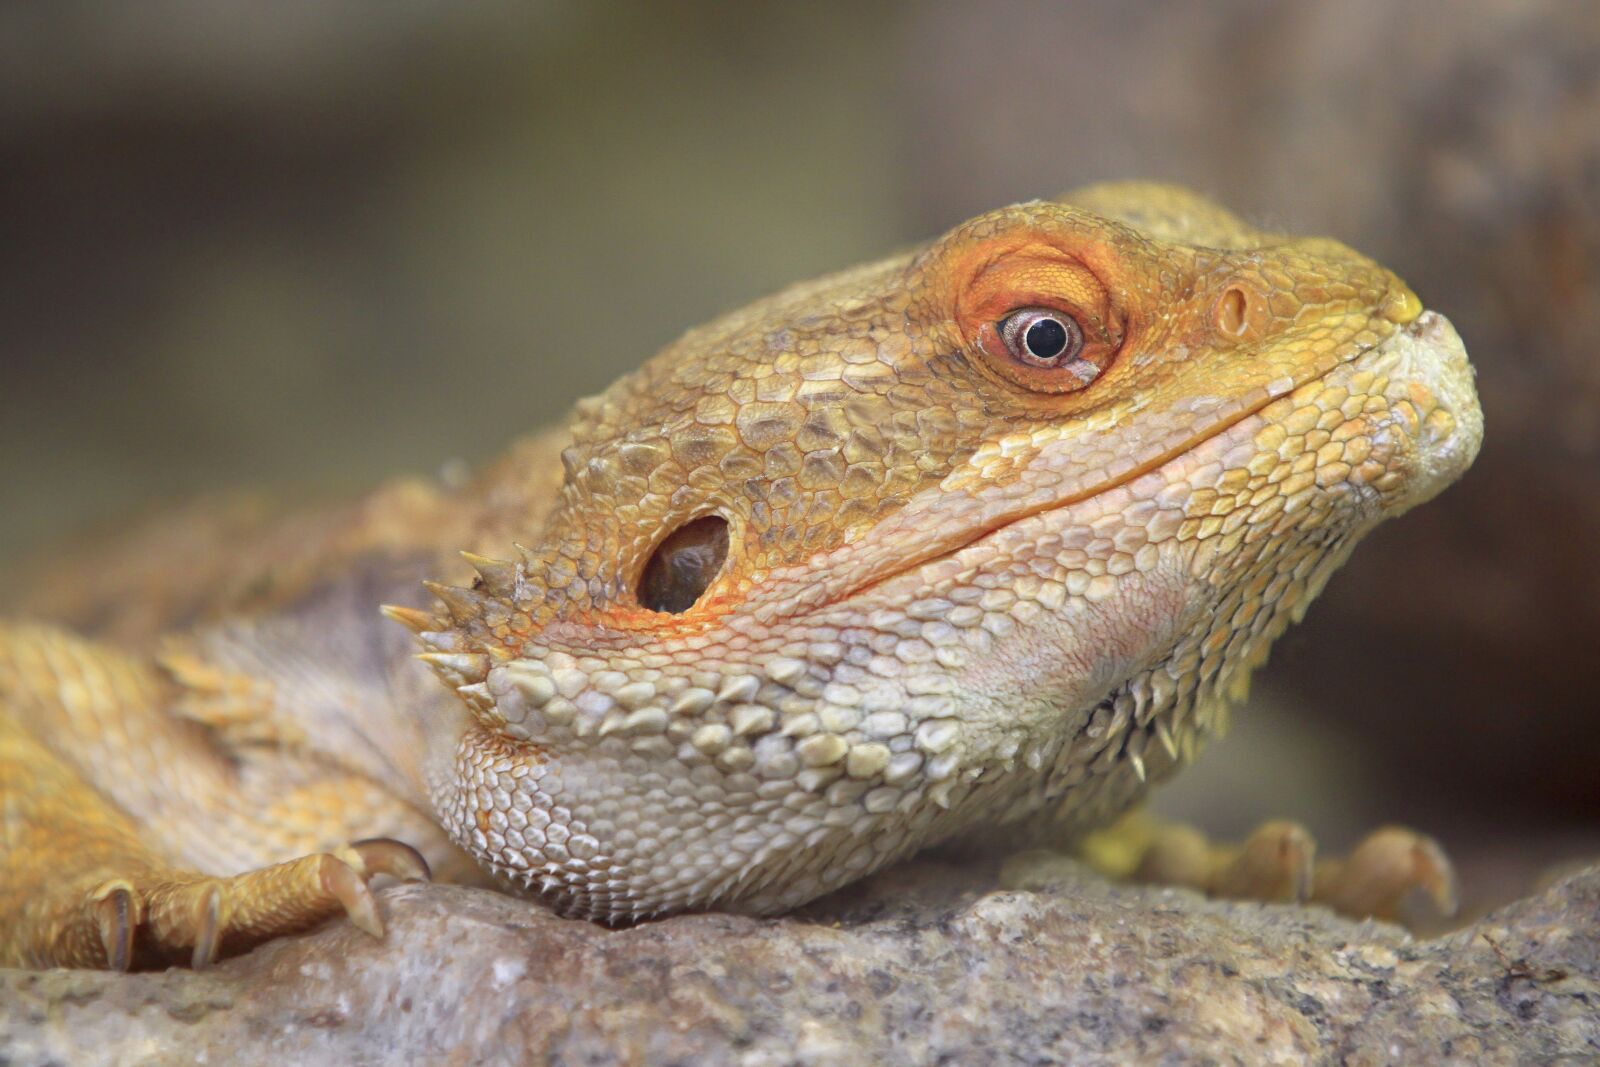 Canon EOS 7D sample photo. Animal, reptile, lizard photography